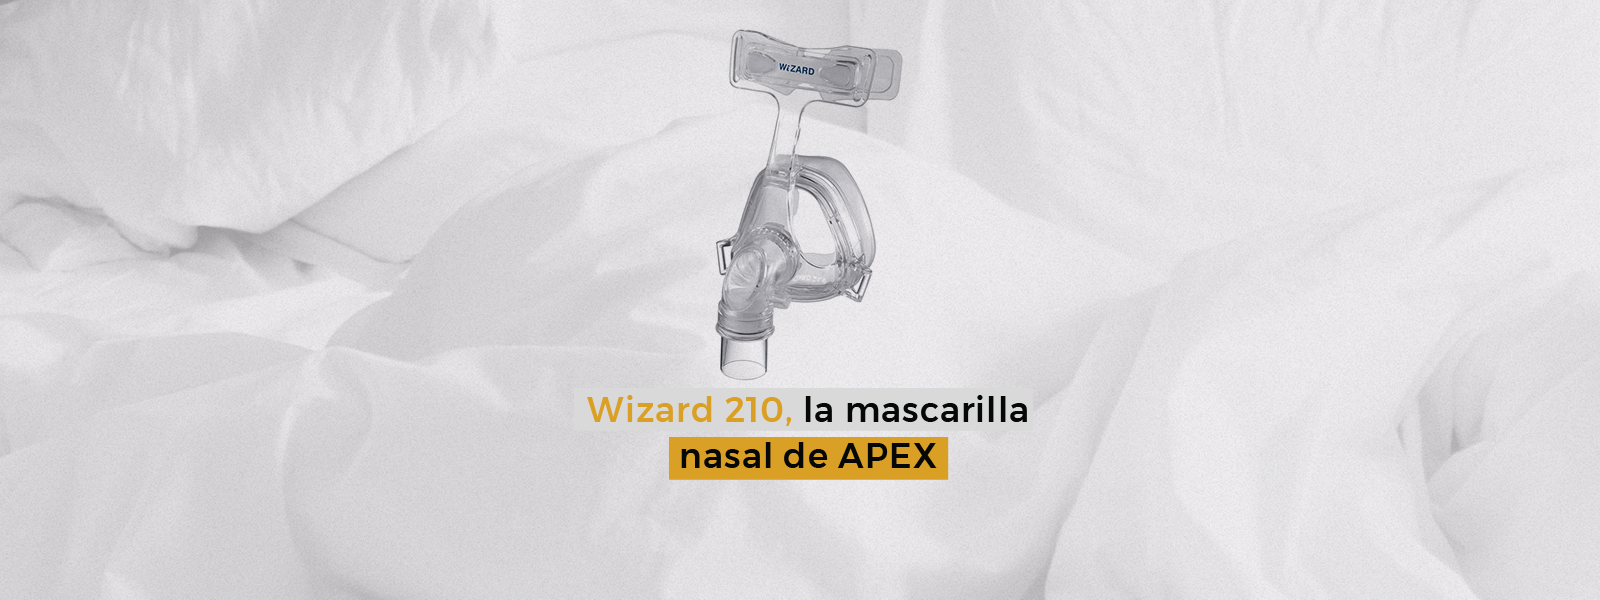 Wizard 210, la mascarilla nasal de APEX